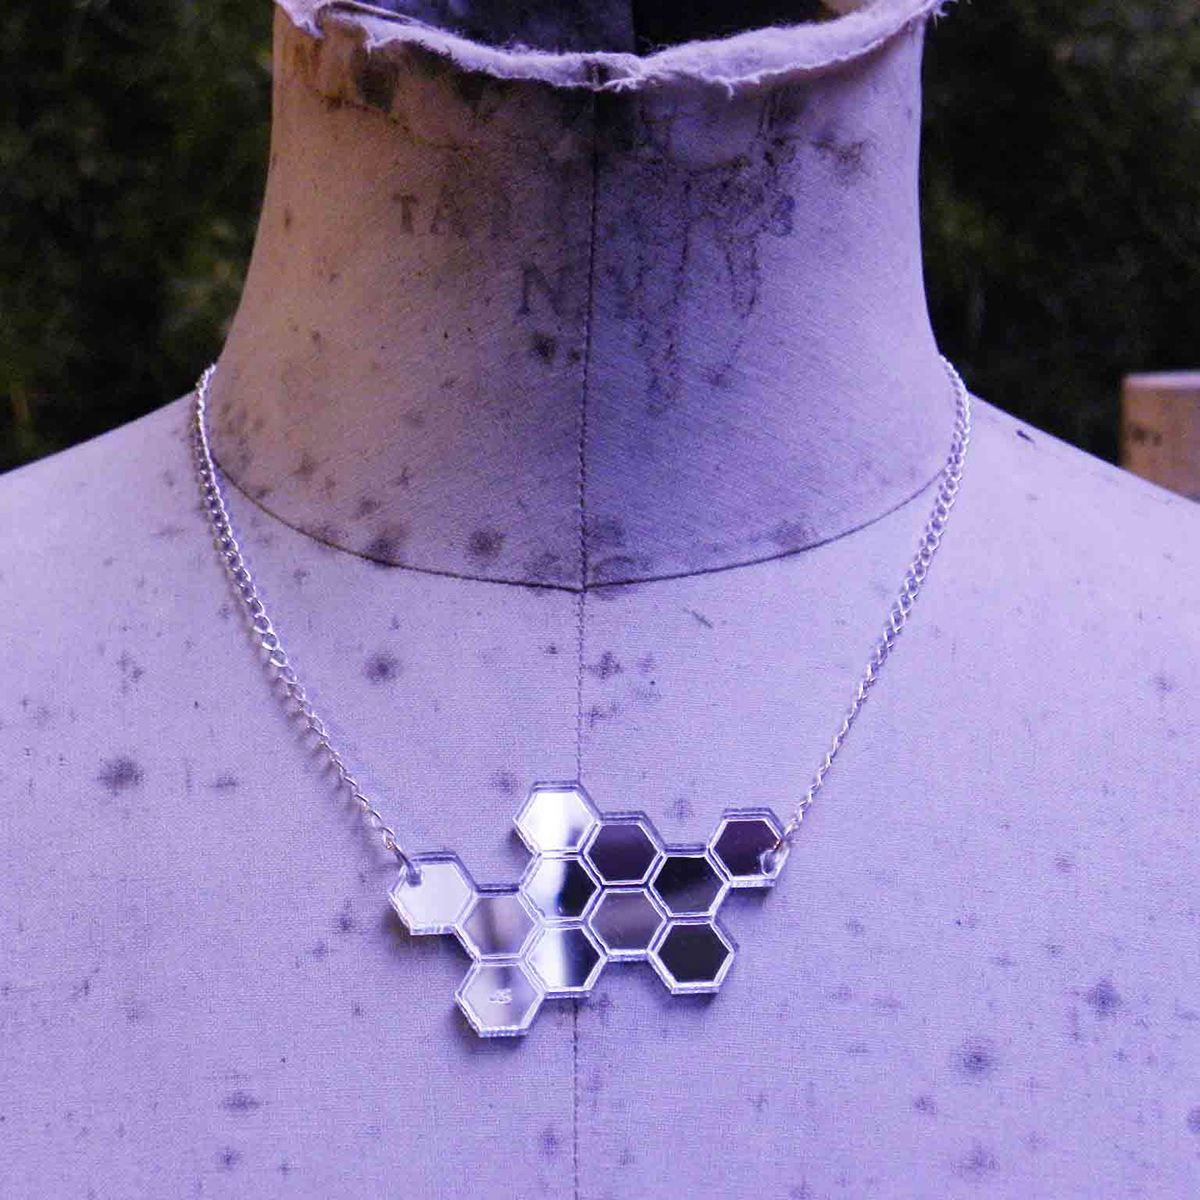 jewelry Earring Necklace orecchini collane plexiglass argento silver merci culto merci di culto alessandra scarfò